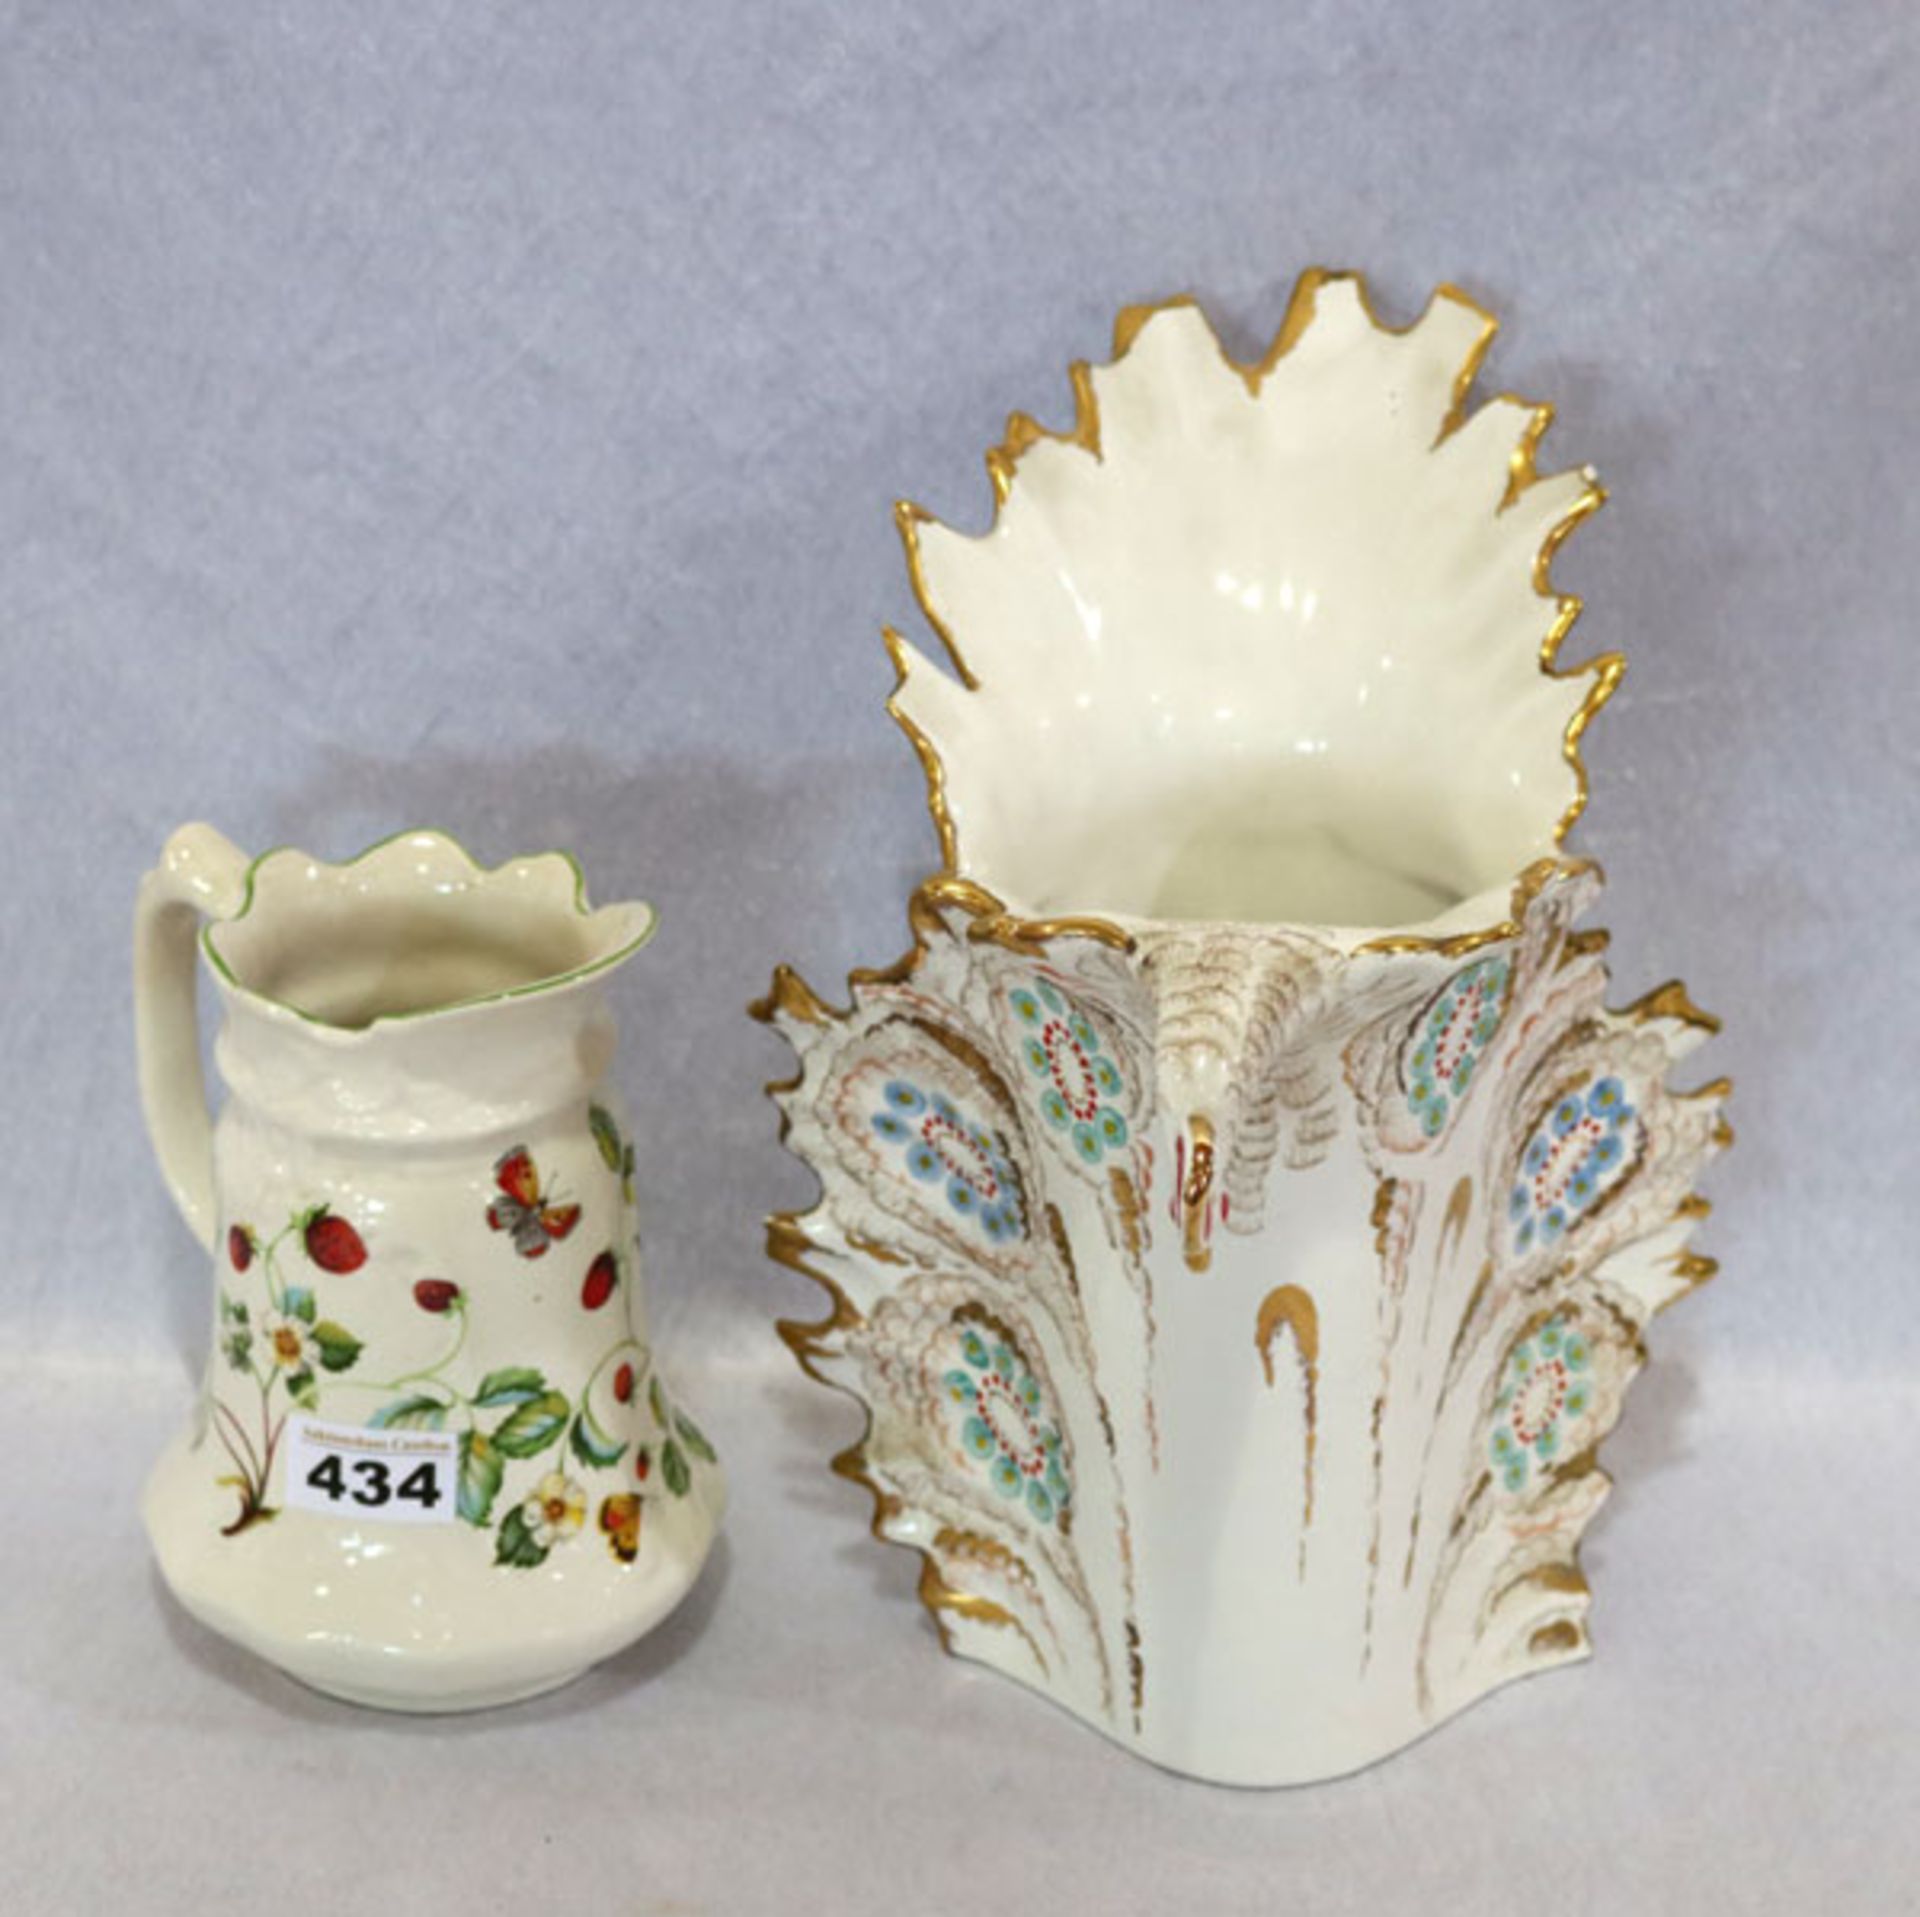 Englischer Keramik Henkelkrug mit Erdbeerdekor, H 19 cm, und ausgefallene Keramik Vase mit